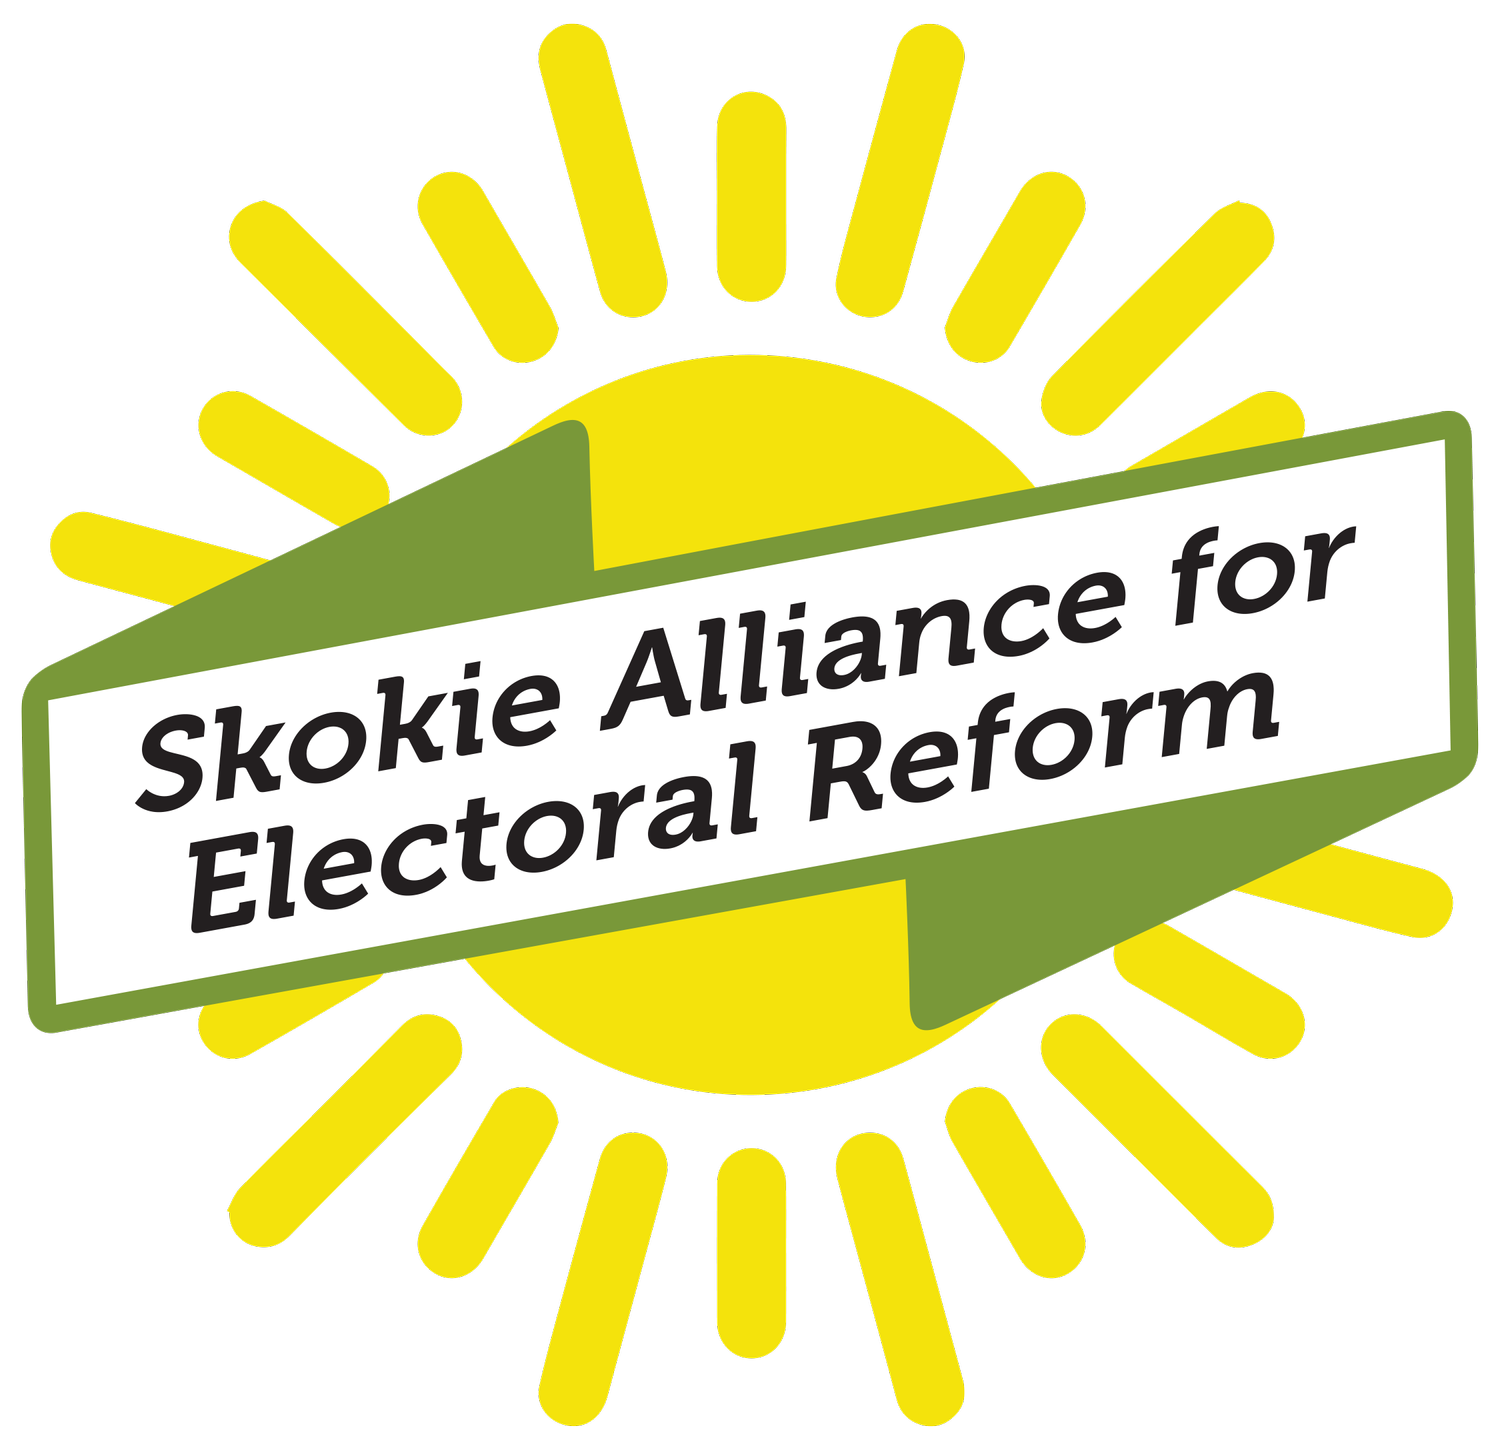 Skokie Alliance for Electoral Reform